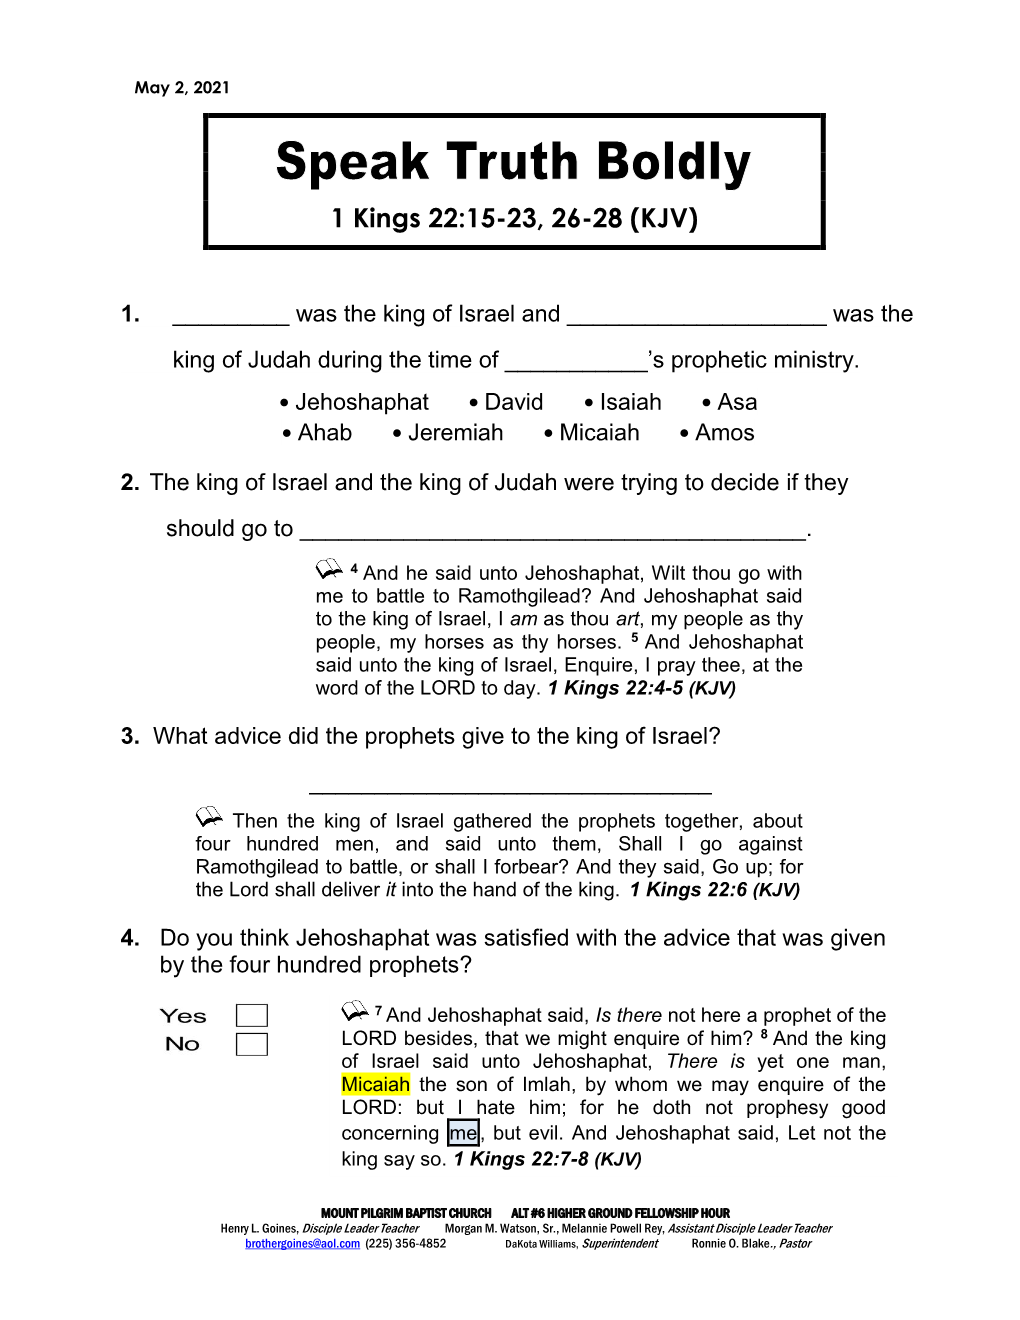 Speak Truth Boldly